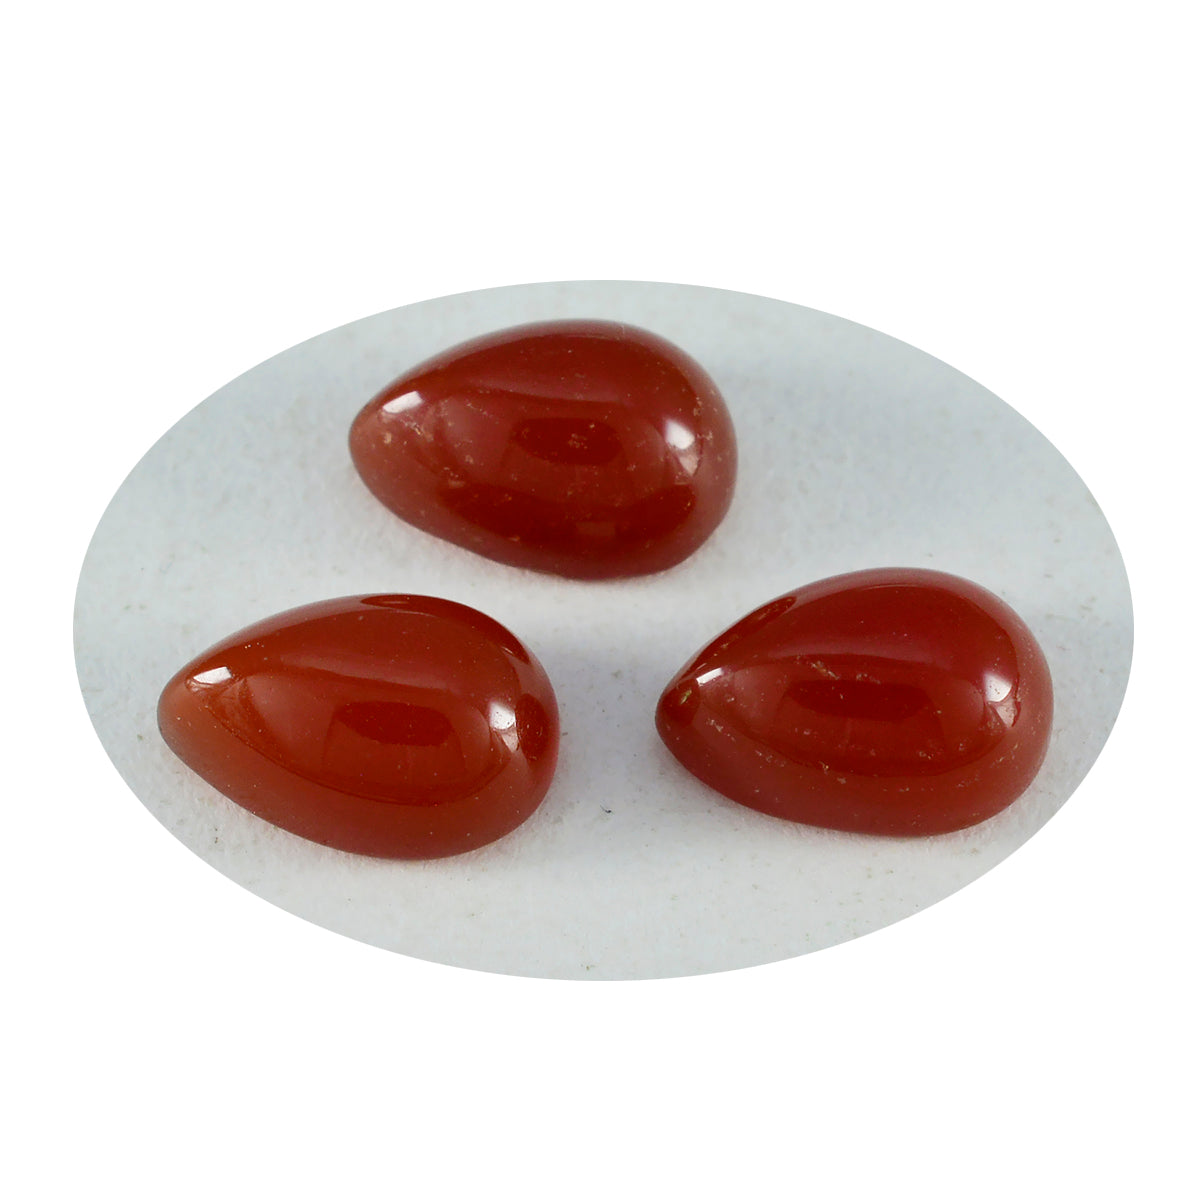 riyogems 1 cabochon di onice rosso 10x14 mm a forma di pera, pietra preziosa di ottima qualità